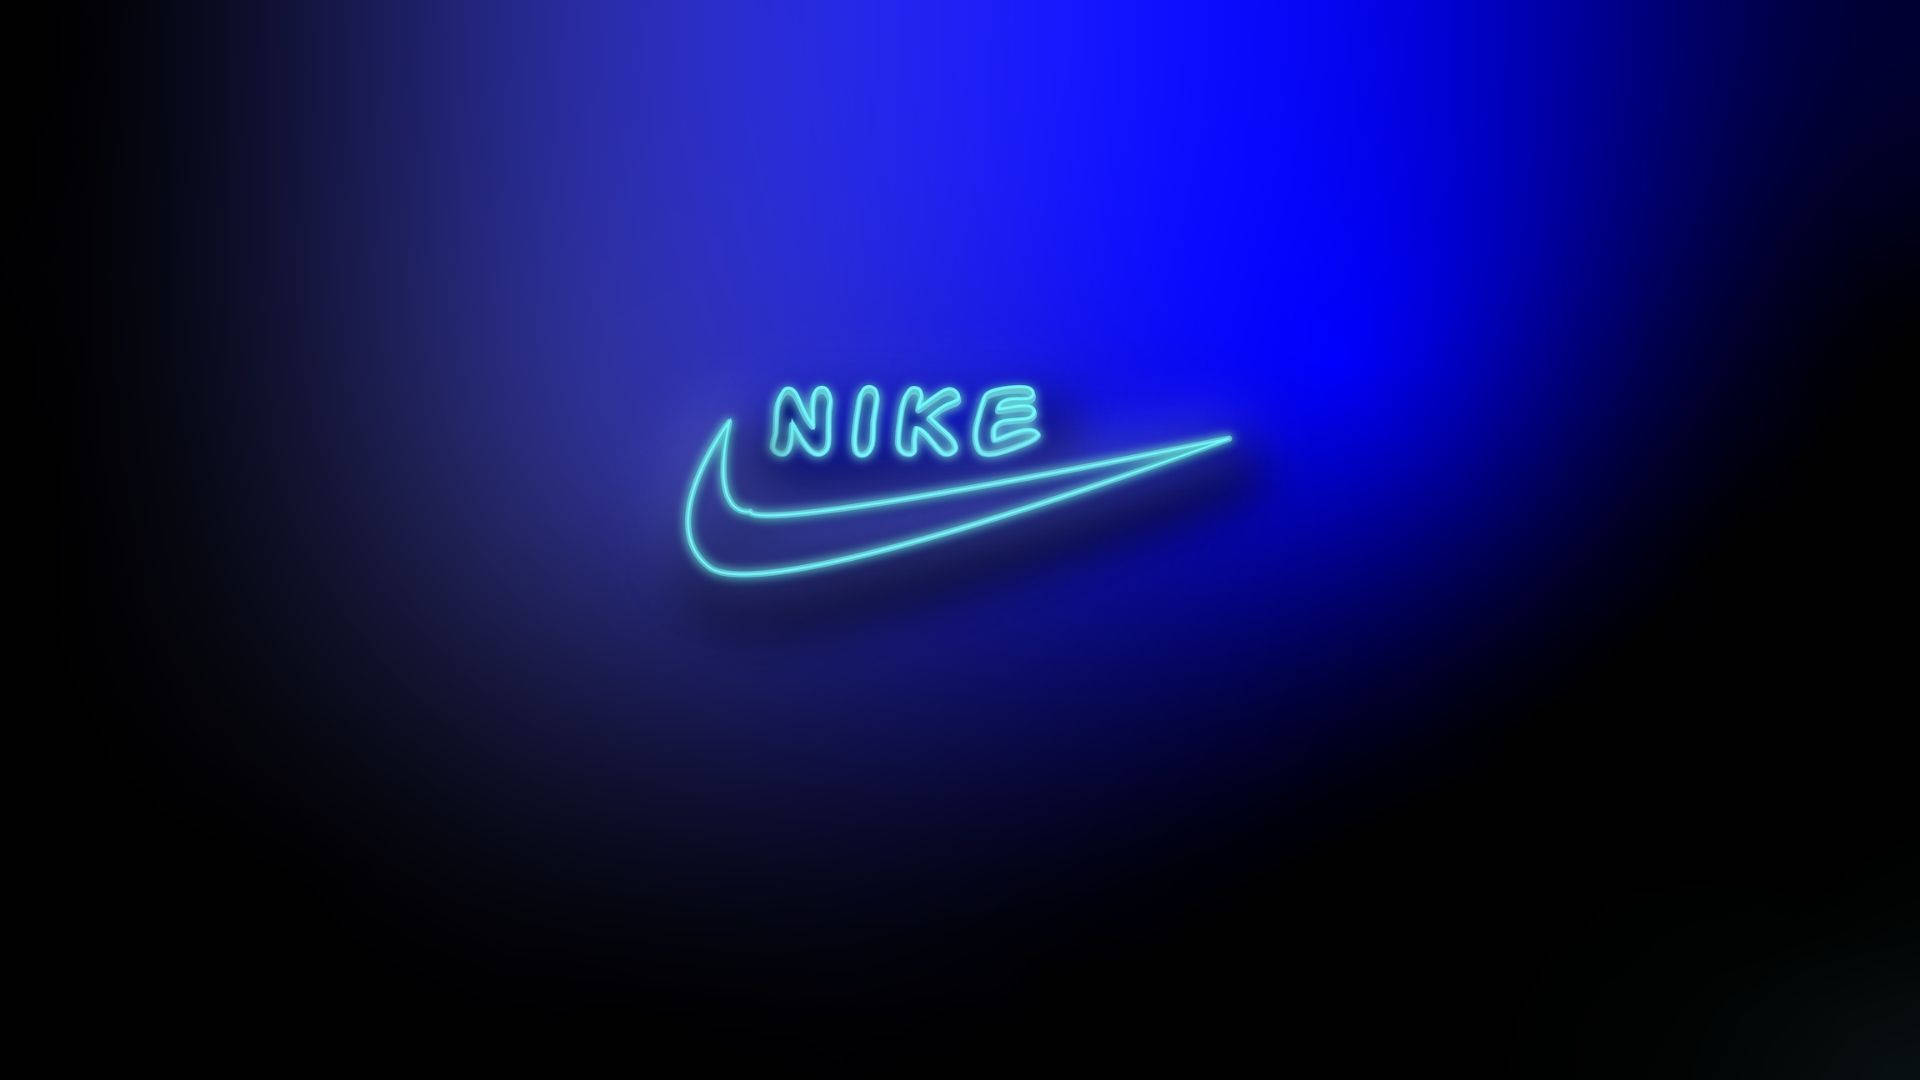 Papelde Parede De Computador Ou Celular Com Nike Em Led Azul Neon. Papel de Parede